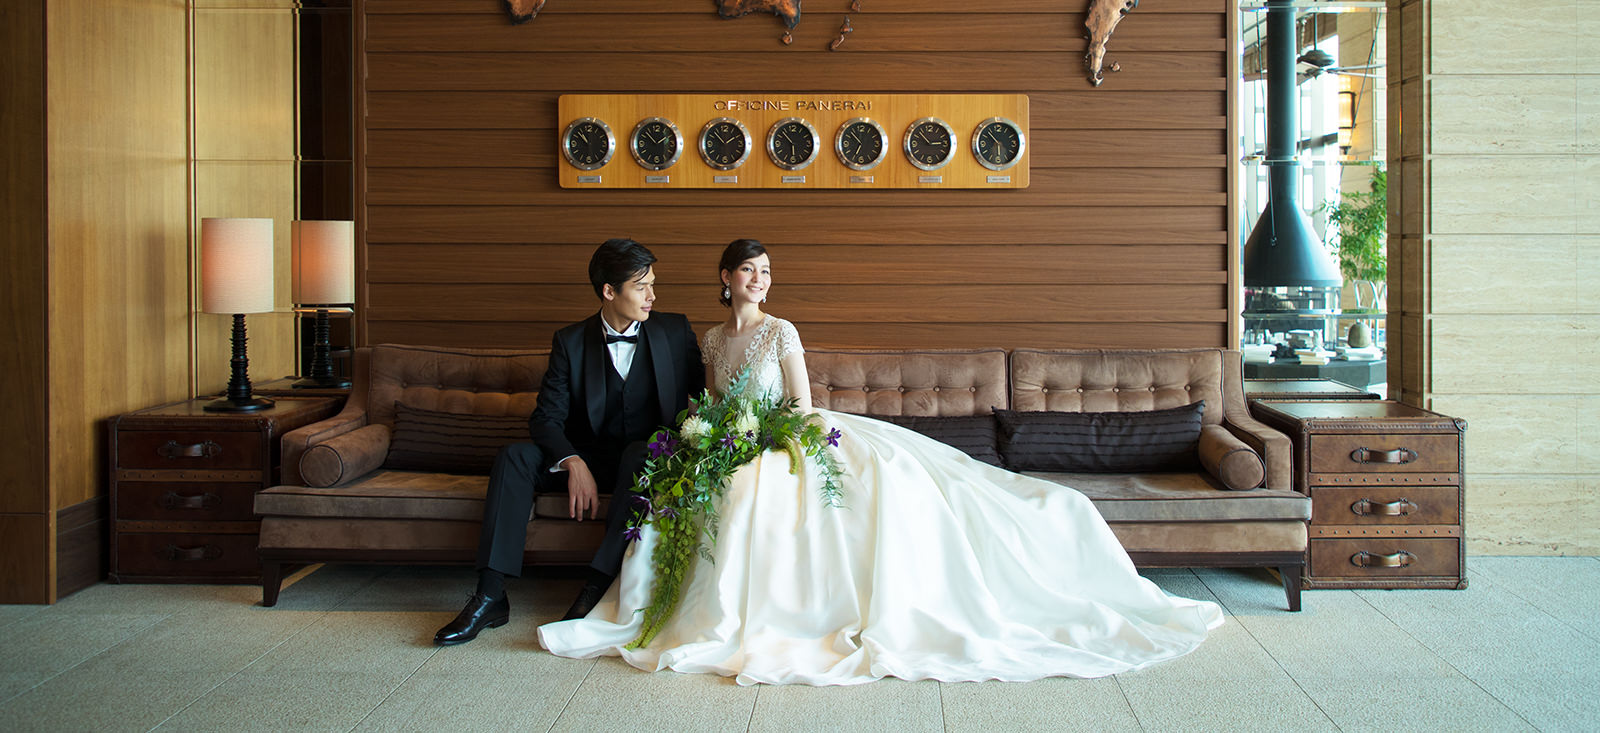 公式 オリエンタルホテル 神戸 Oriental Hotel Kobe 結婚式 結婚式場 ウェディング